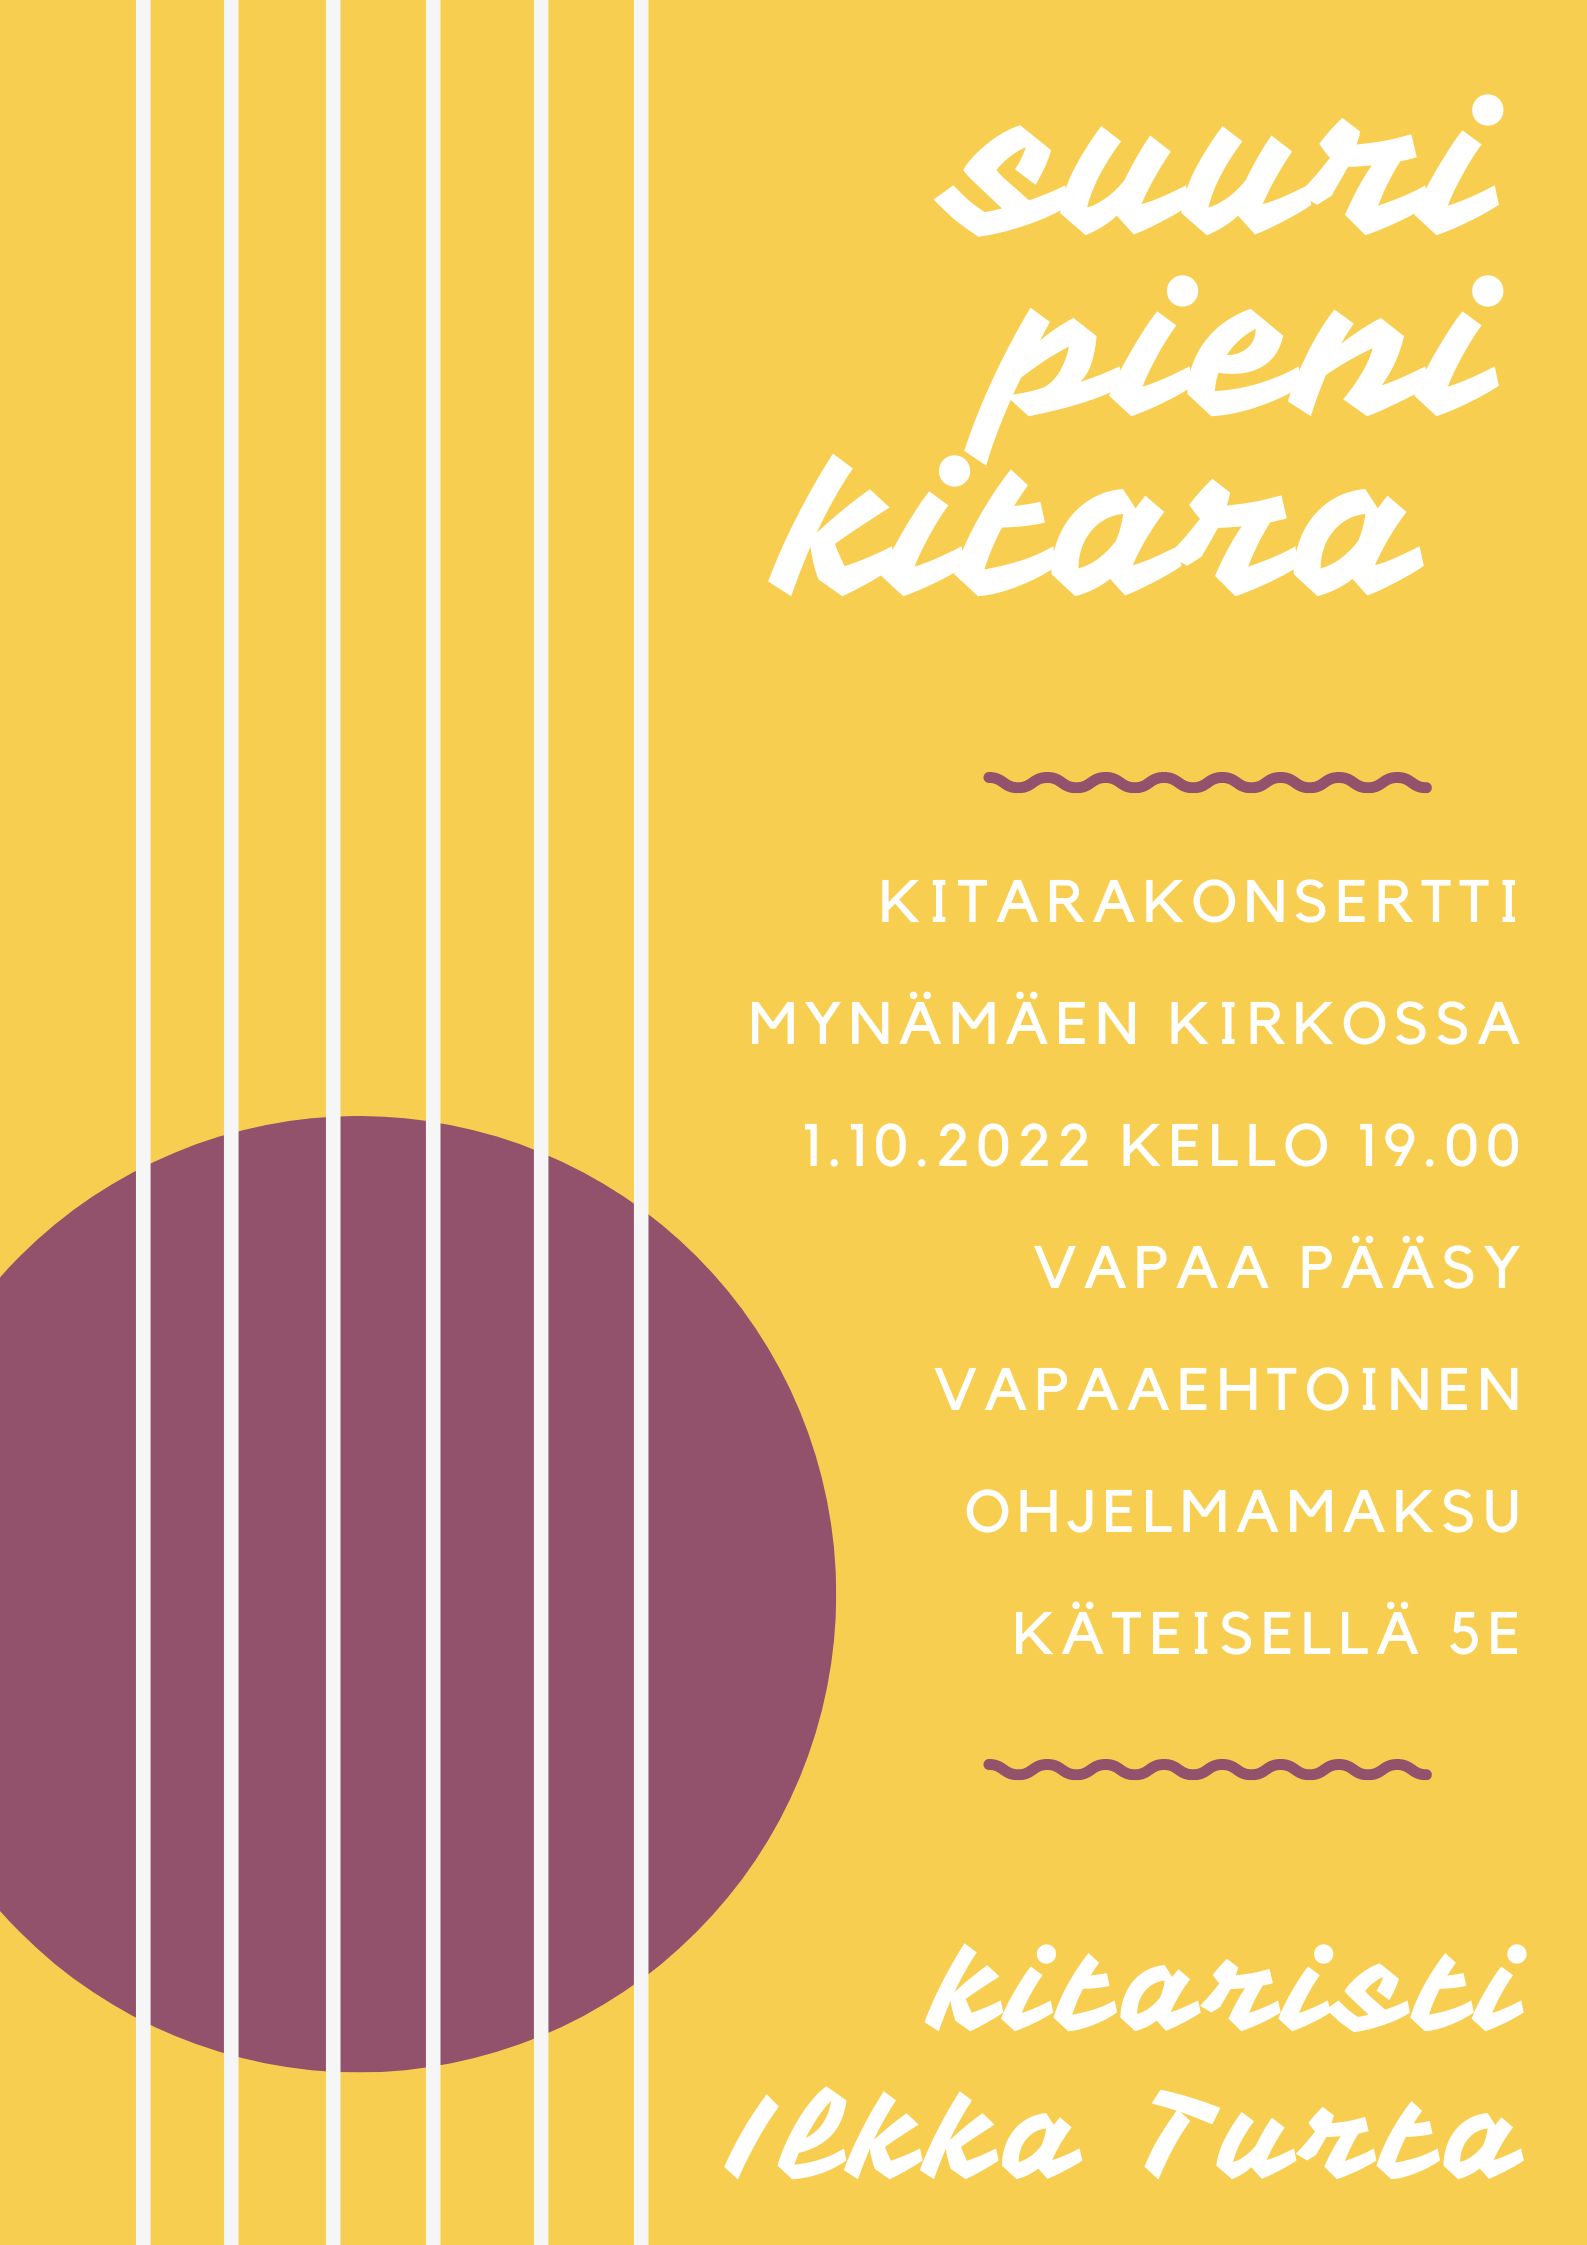 Kitarakonsertti Mynämäen kirkossa 1.10.2022 klo 19.00